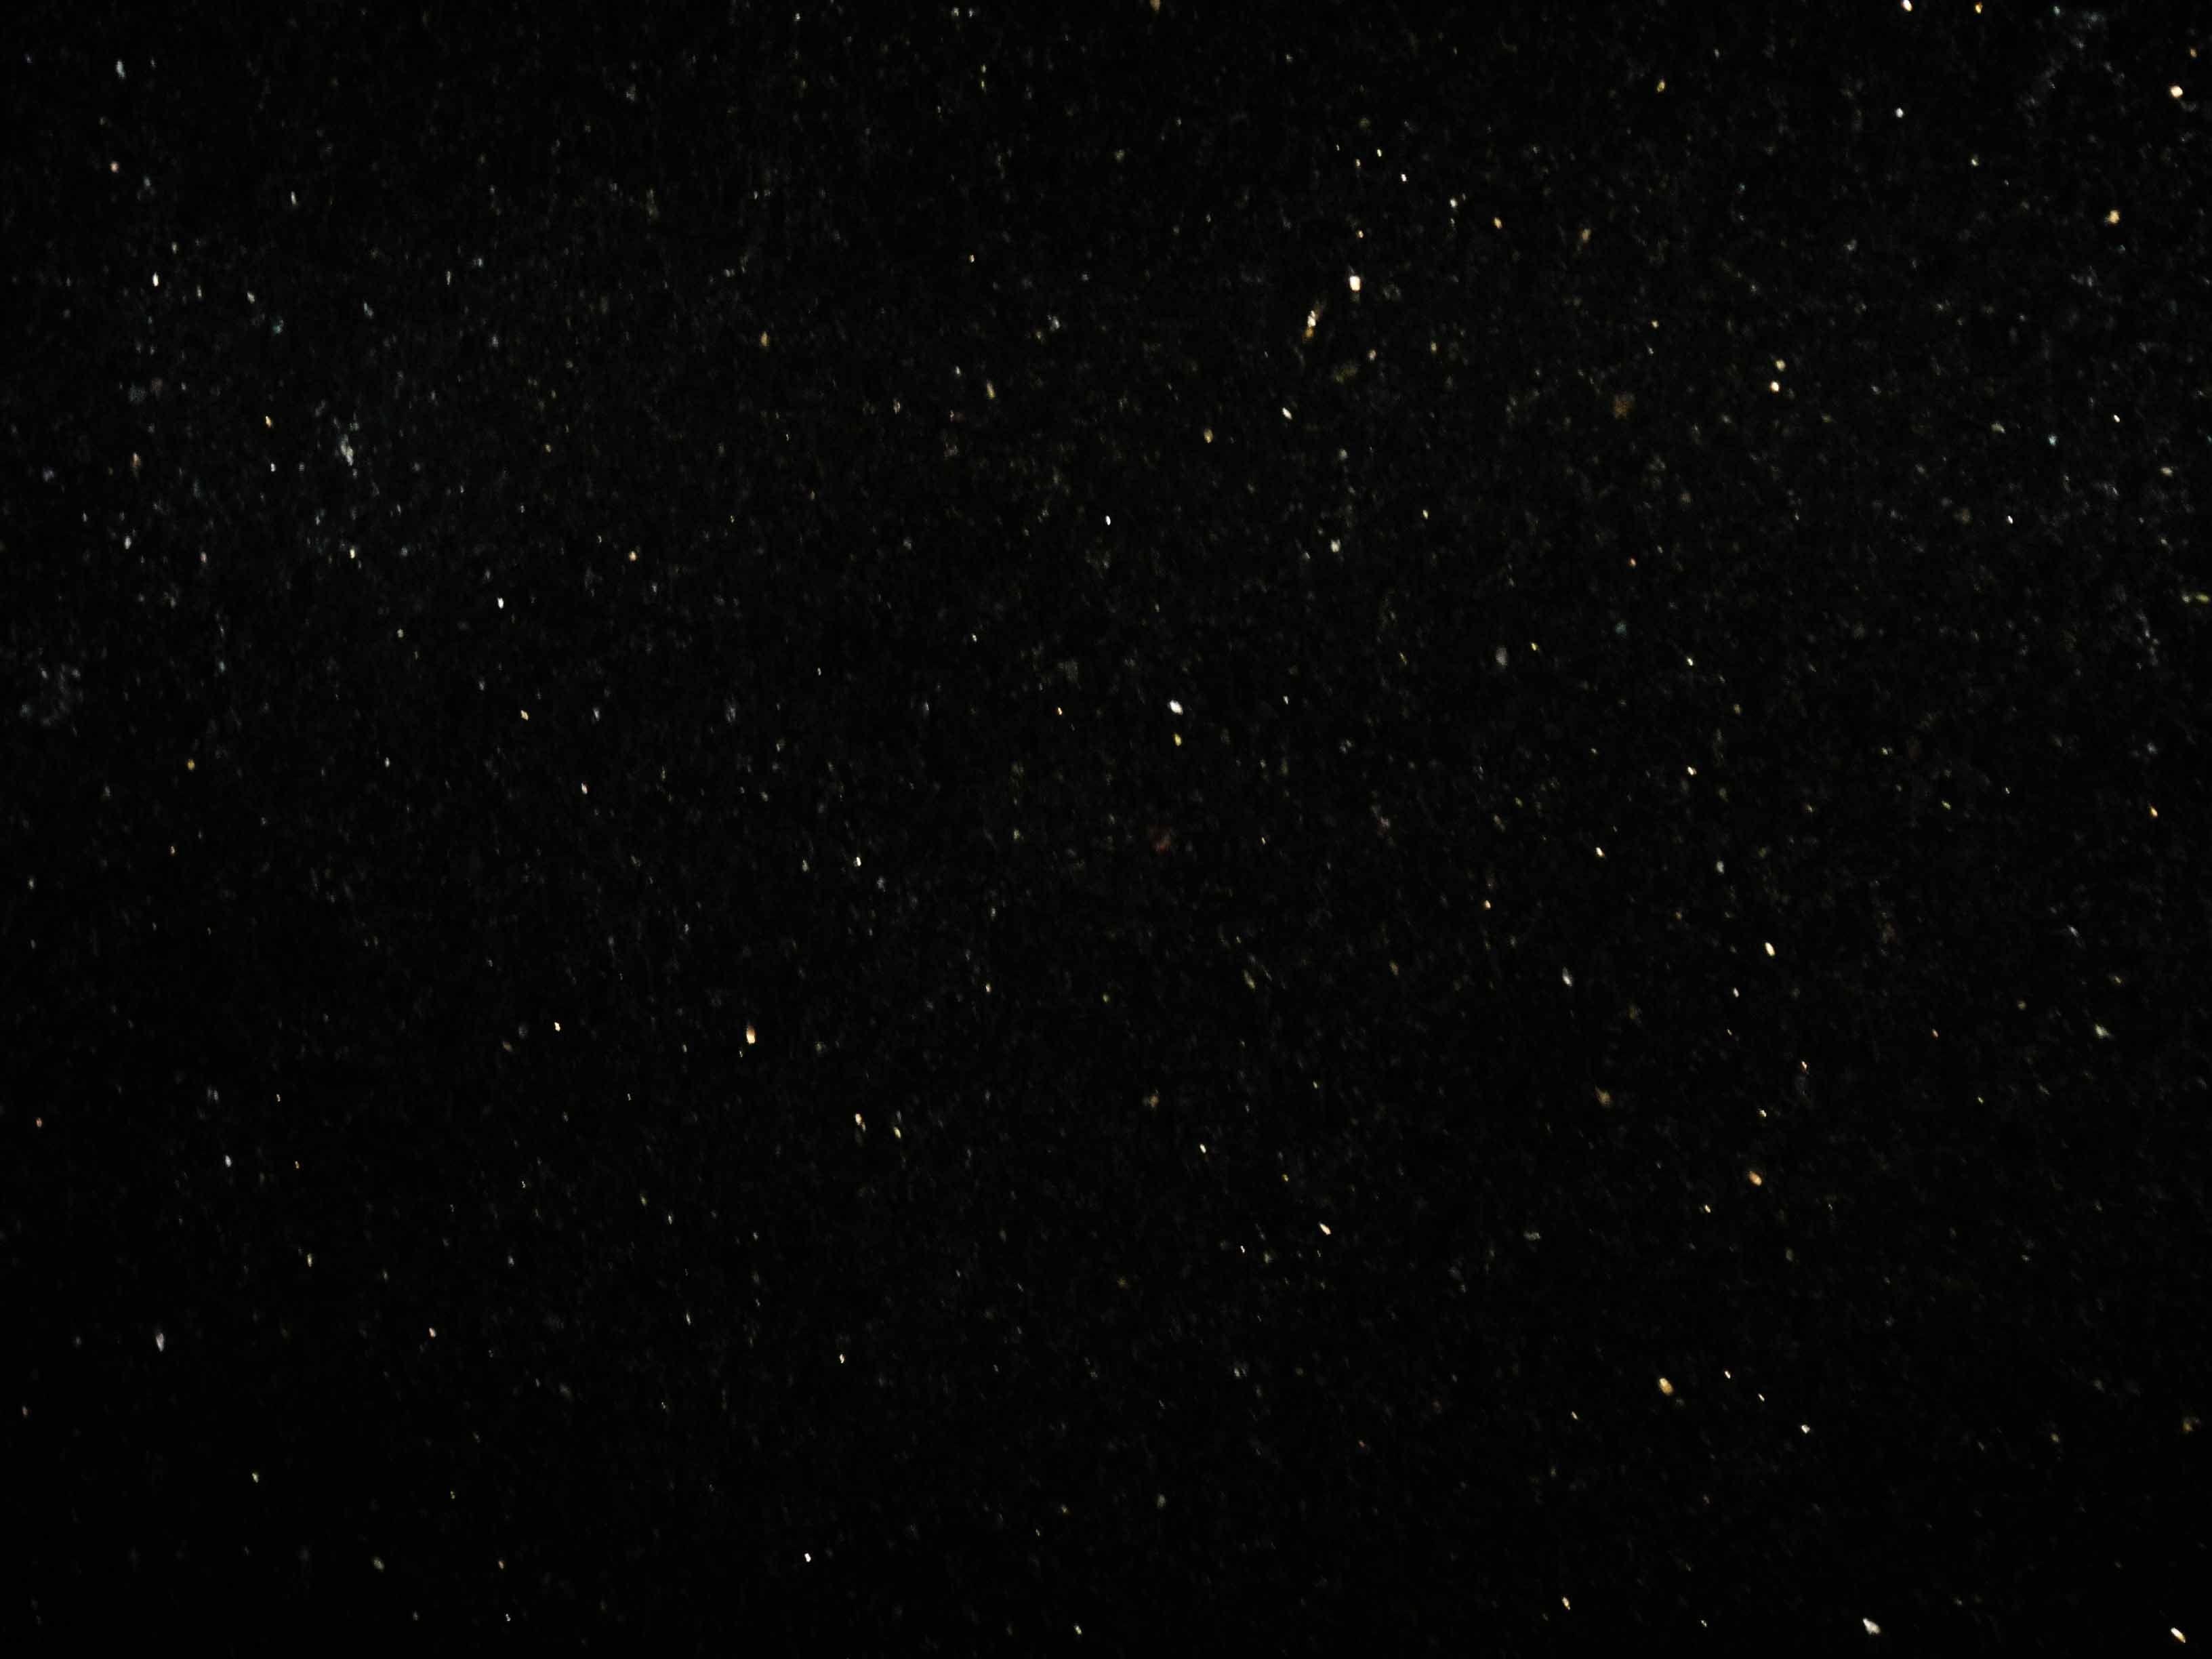 Hình nền đen galaxy: Với màu đen làm chủ đạo, hình nền đen galaxy mang đến cho bạn cảm giác trầm lắng, đầy sức mạnh, đó cũng chính là sức hút của loại hình này. Mời bạn chiêm ngưỡng bộ sưu tập hình nền đen galaxy cực kỳ ấn tượng để trang trí cho màn hình điện thoại hay máy tính của mình.